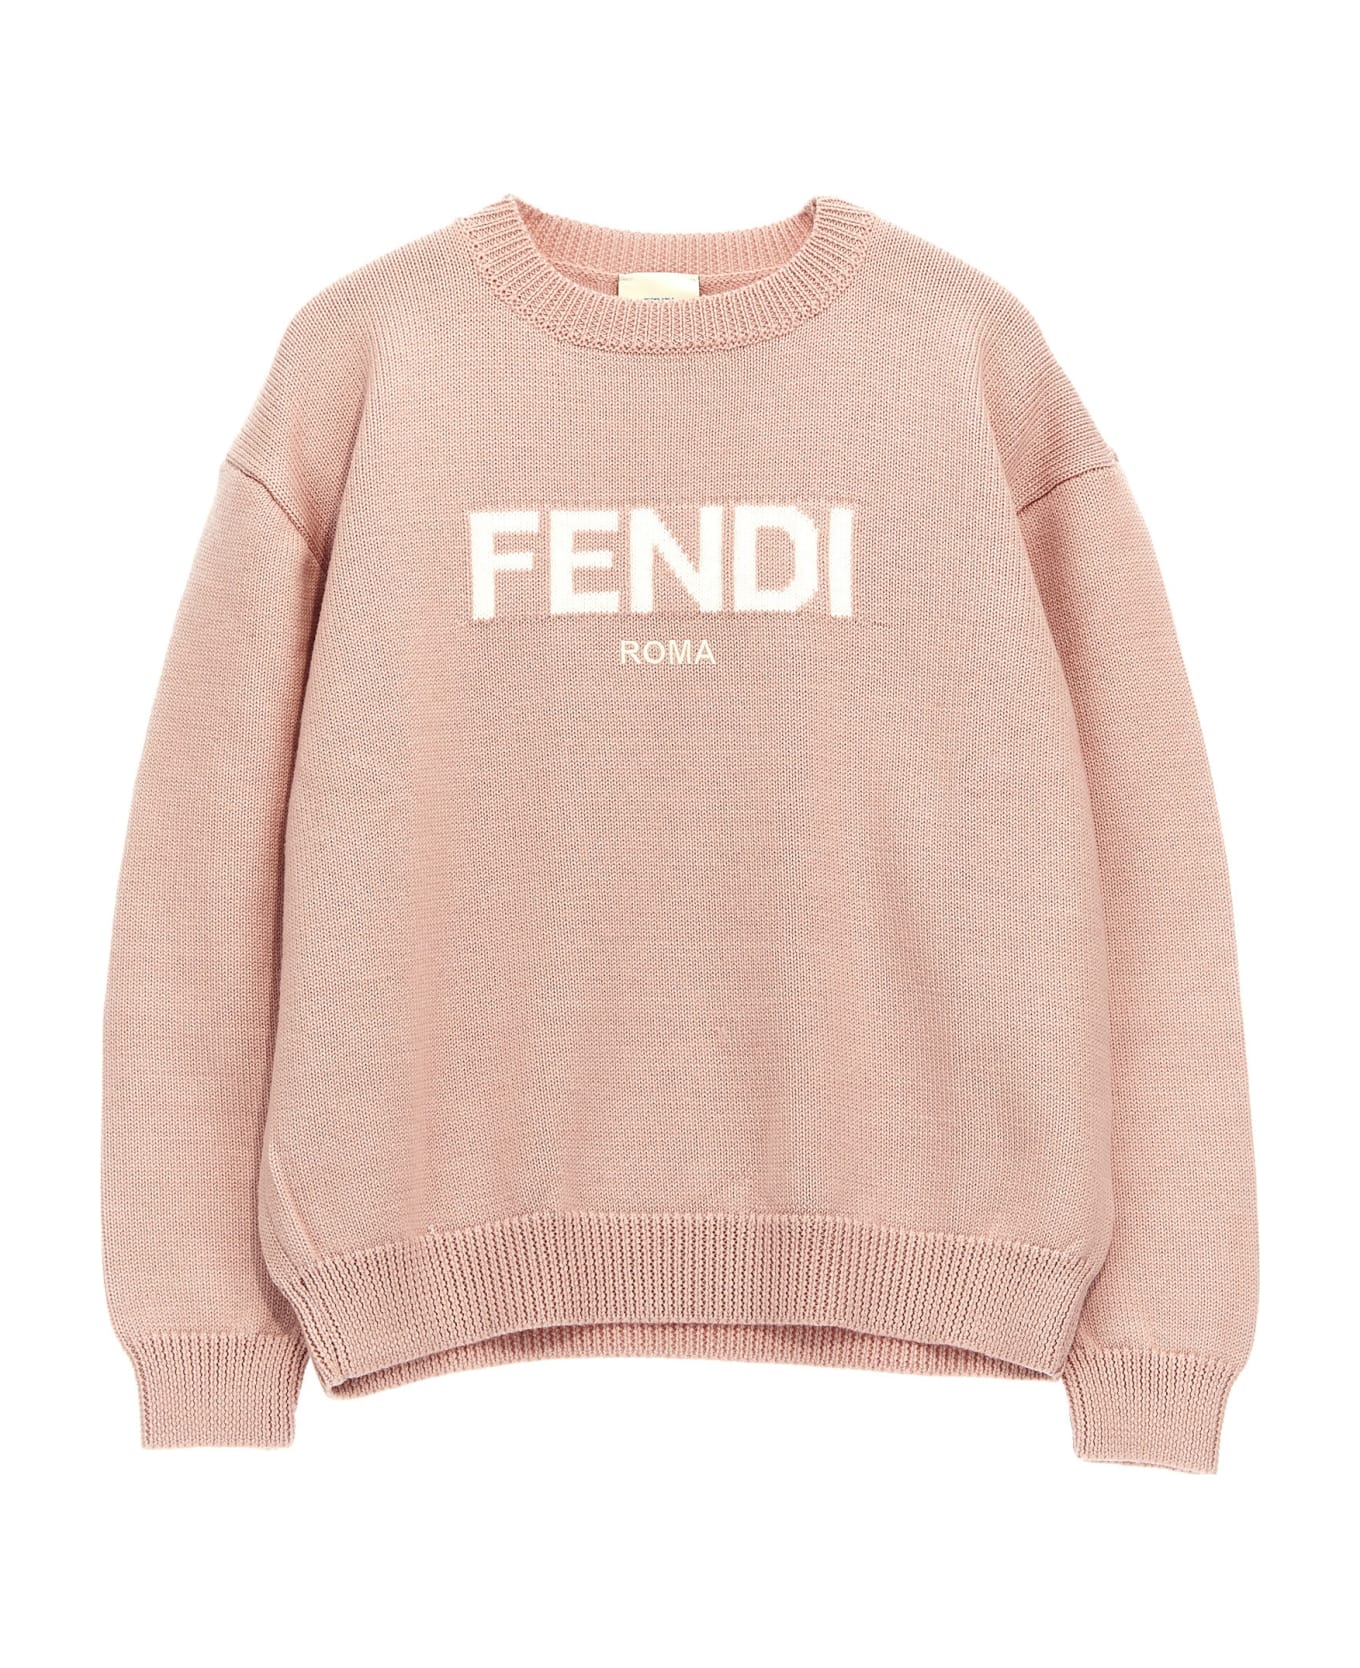 Fendi 'fendi Roma' Sweater - Pink